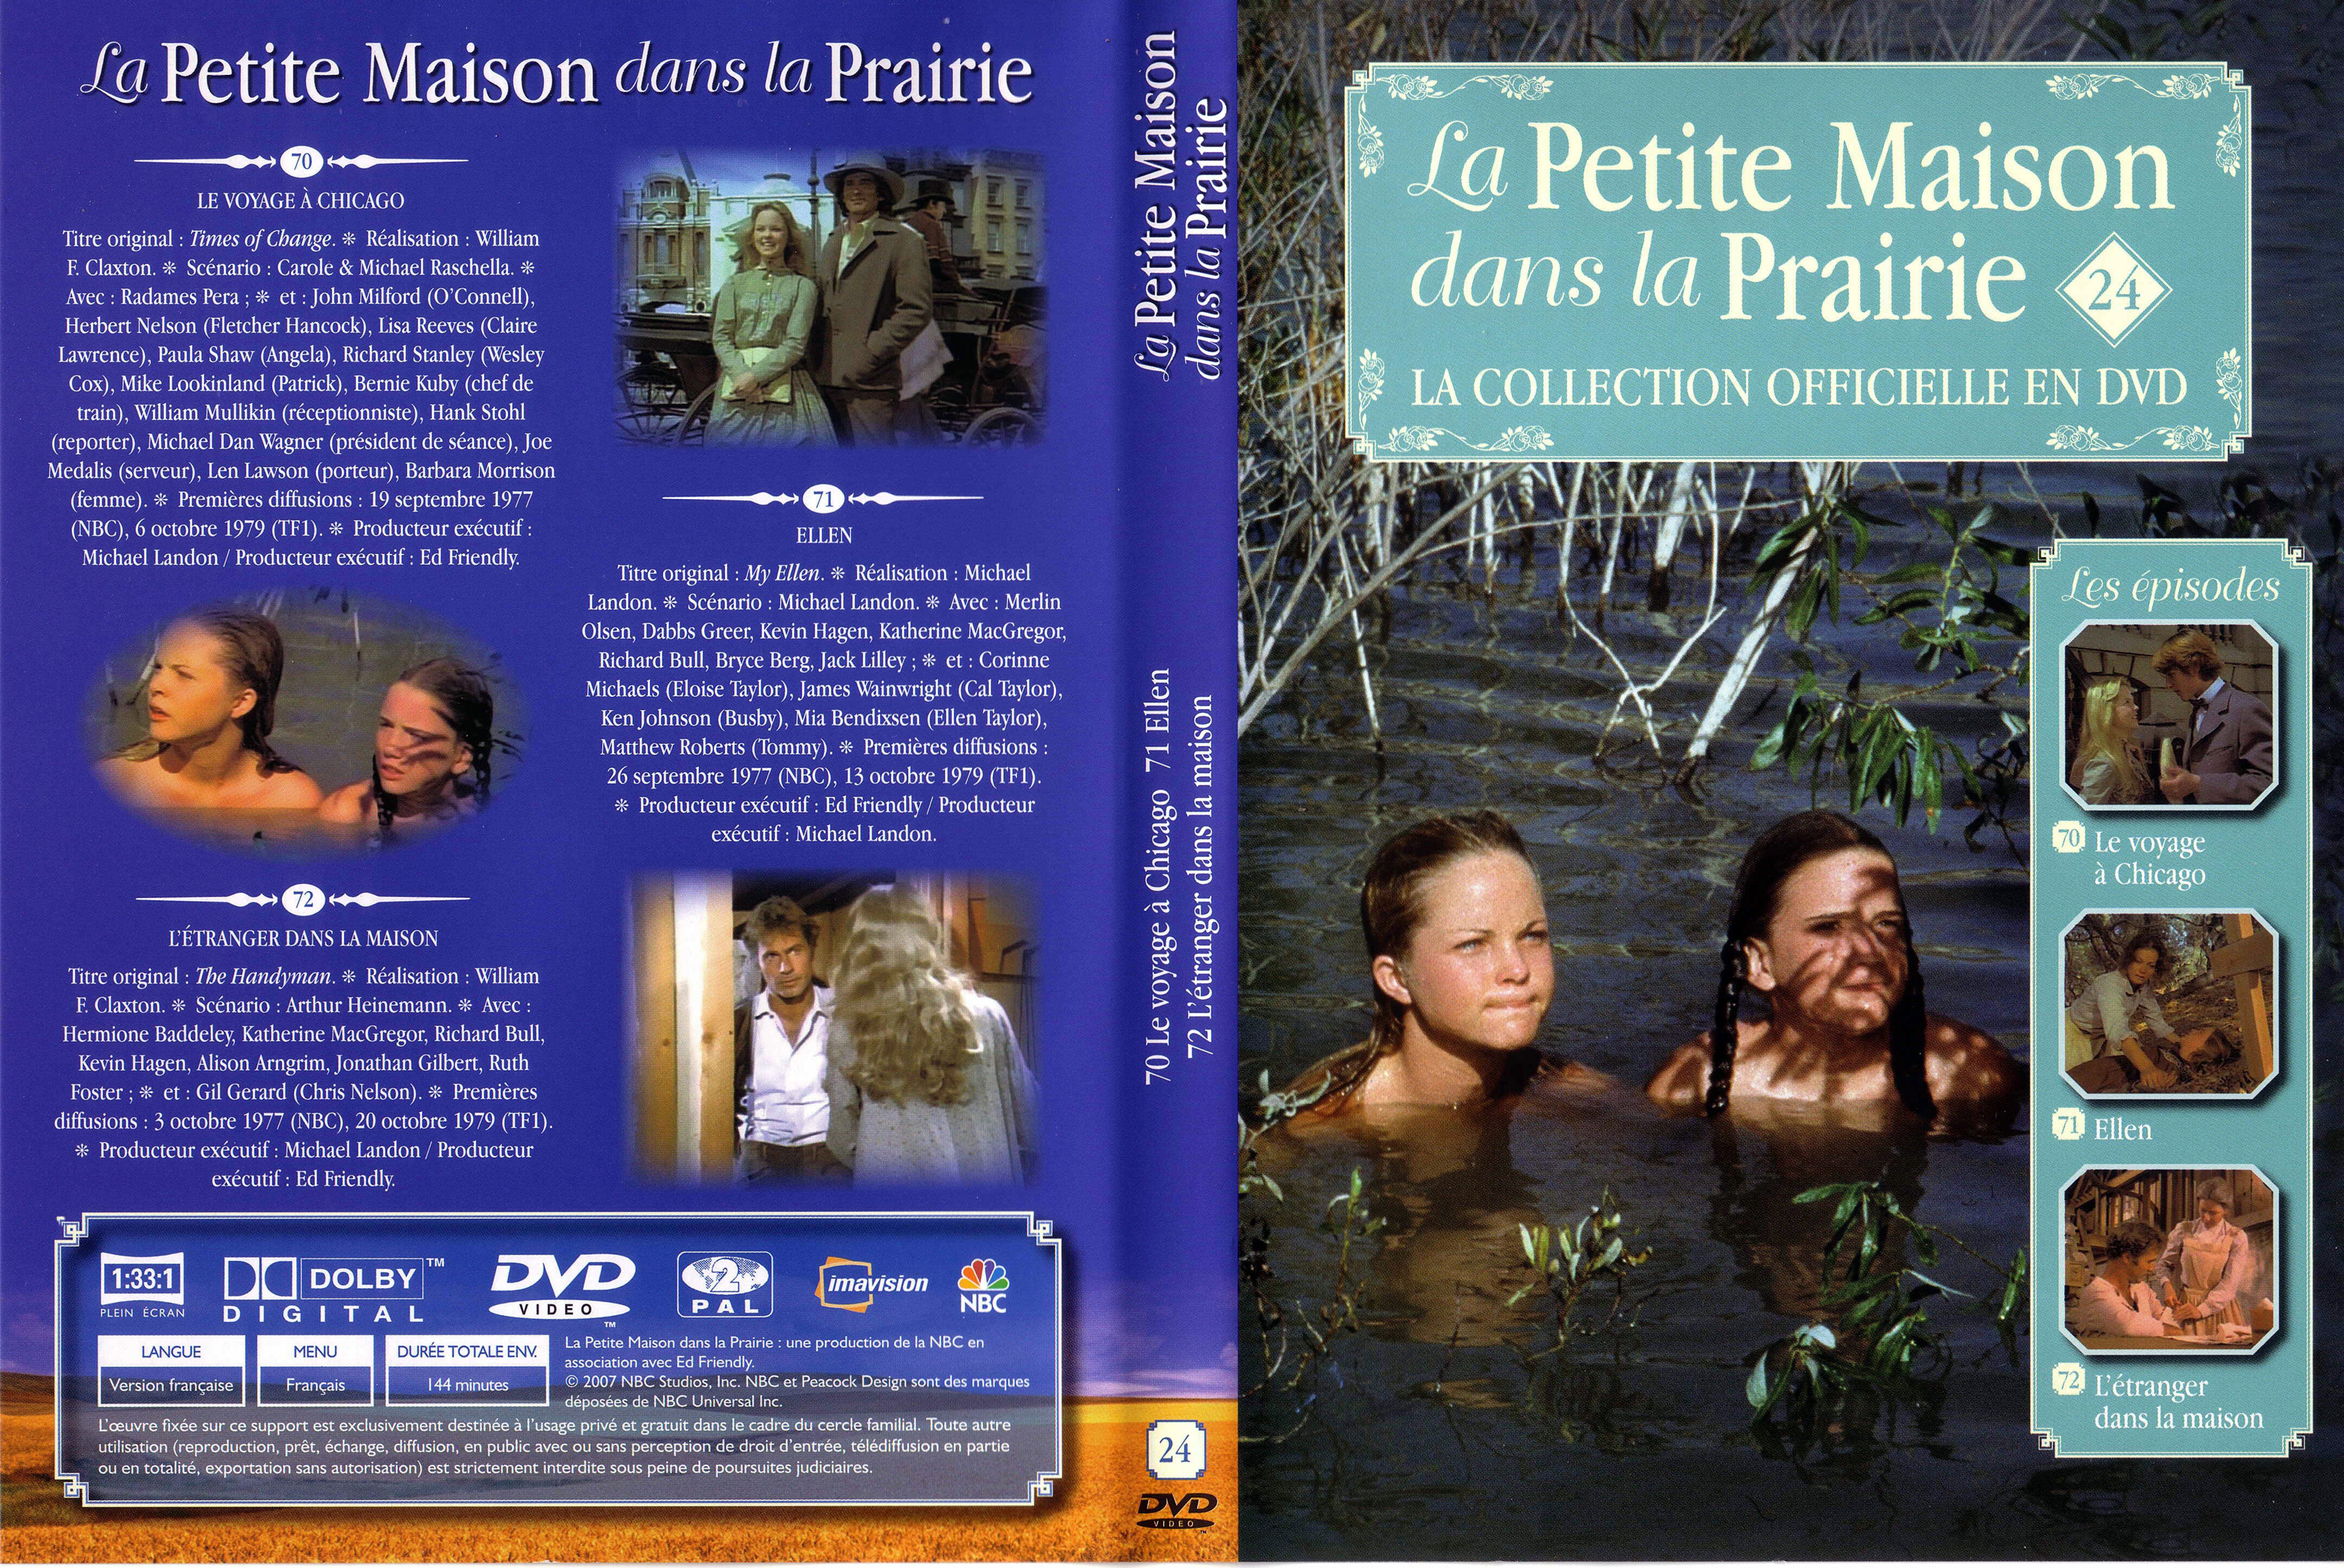 Jaquette DVD La petite maison dans la prairie La Collection vol 24